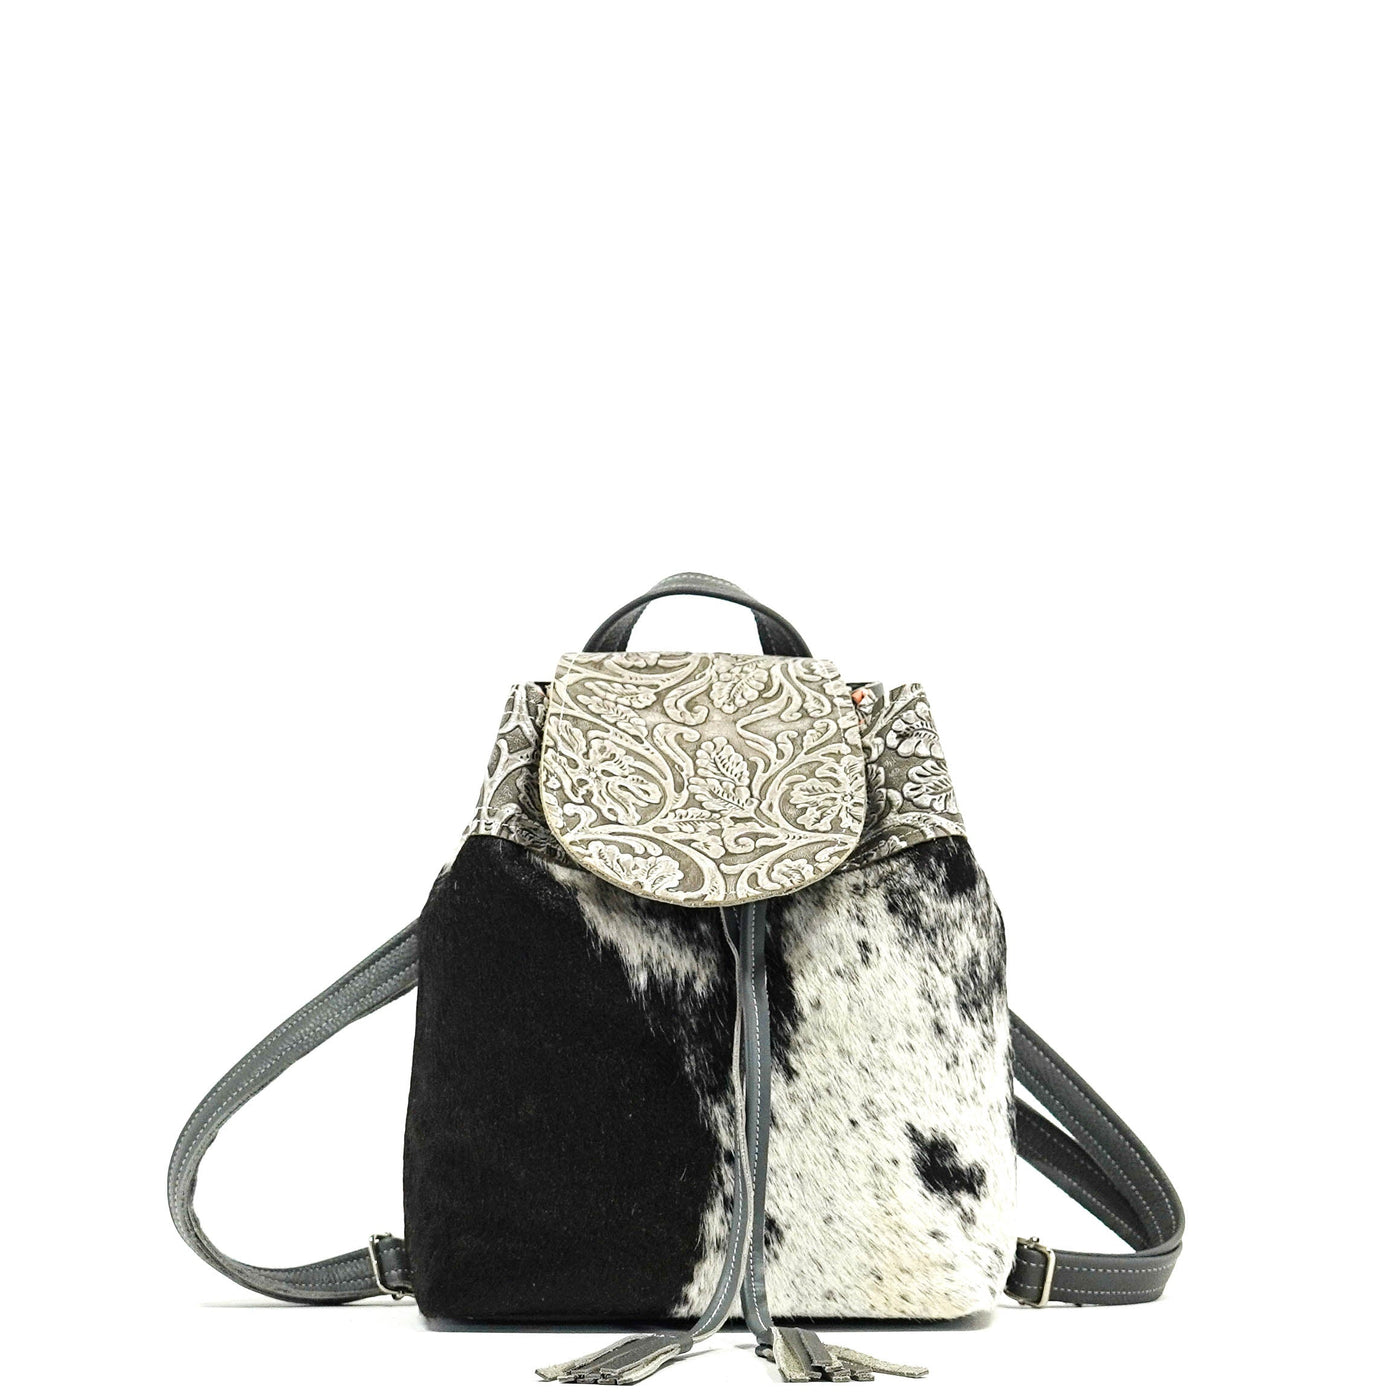 Mini Kelsea Backpack - Black & White w/ Silver Tool-Mini Kelsea Backpack-Western-Cowhide-Bags-Handmade-Products-Gifts-Dancing Cactus Designs